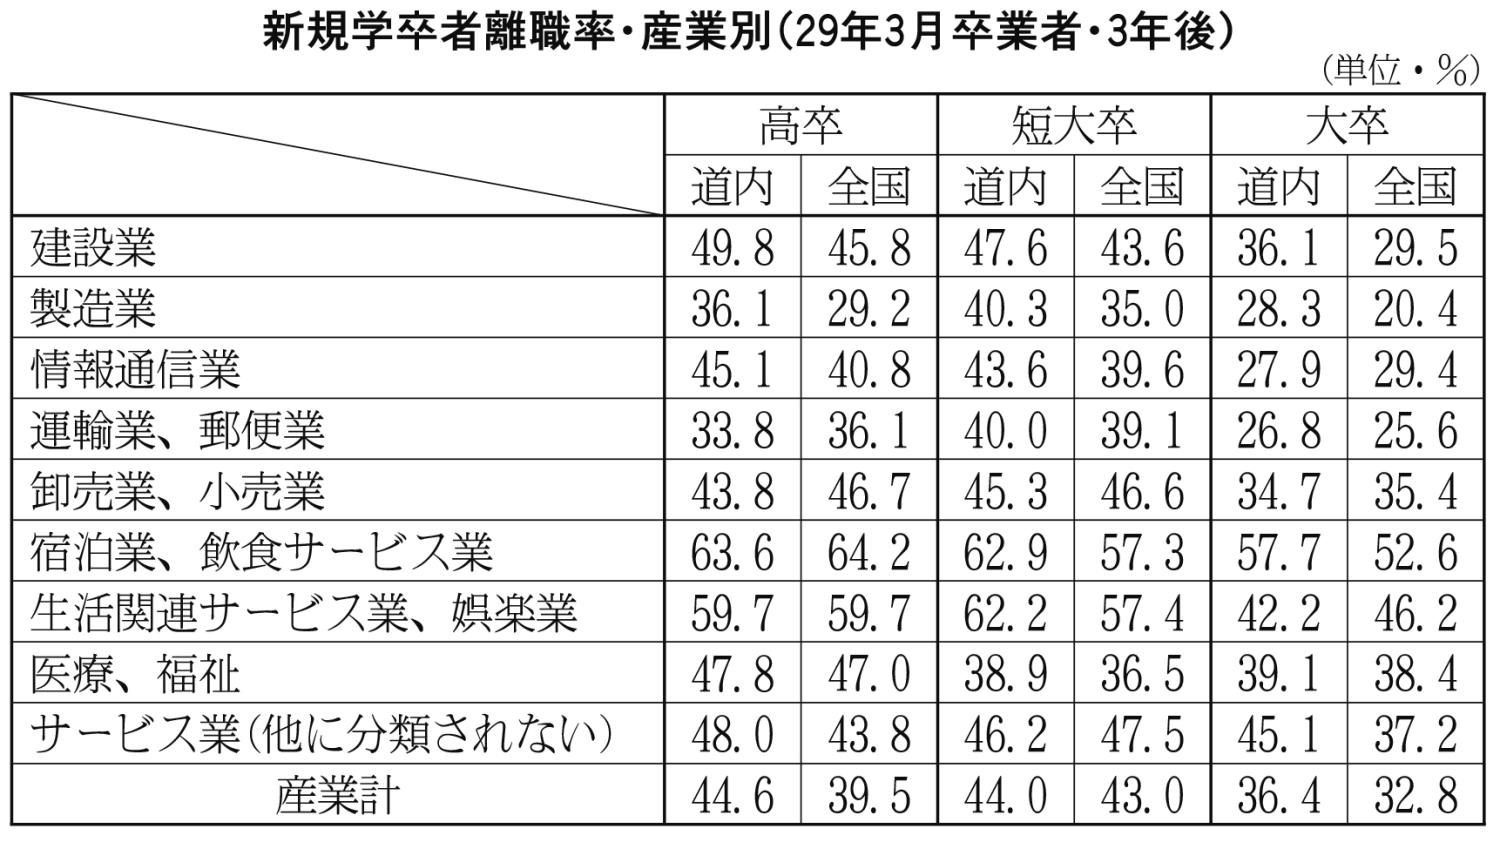 新規学卒者離職率・産業別（２９年３月卒業者・３年後）